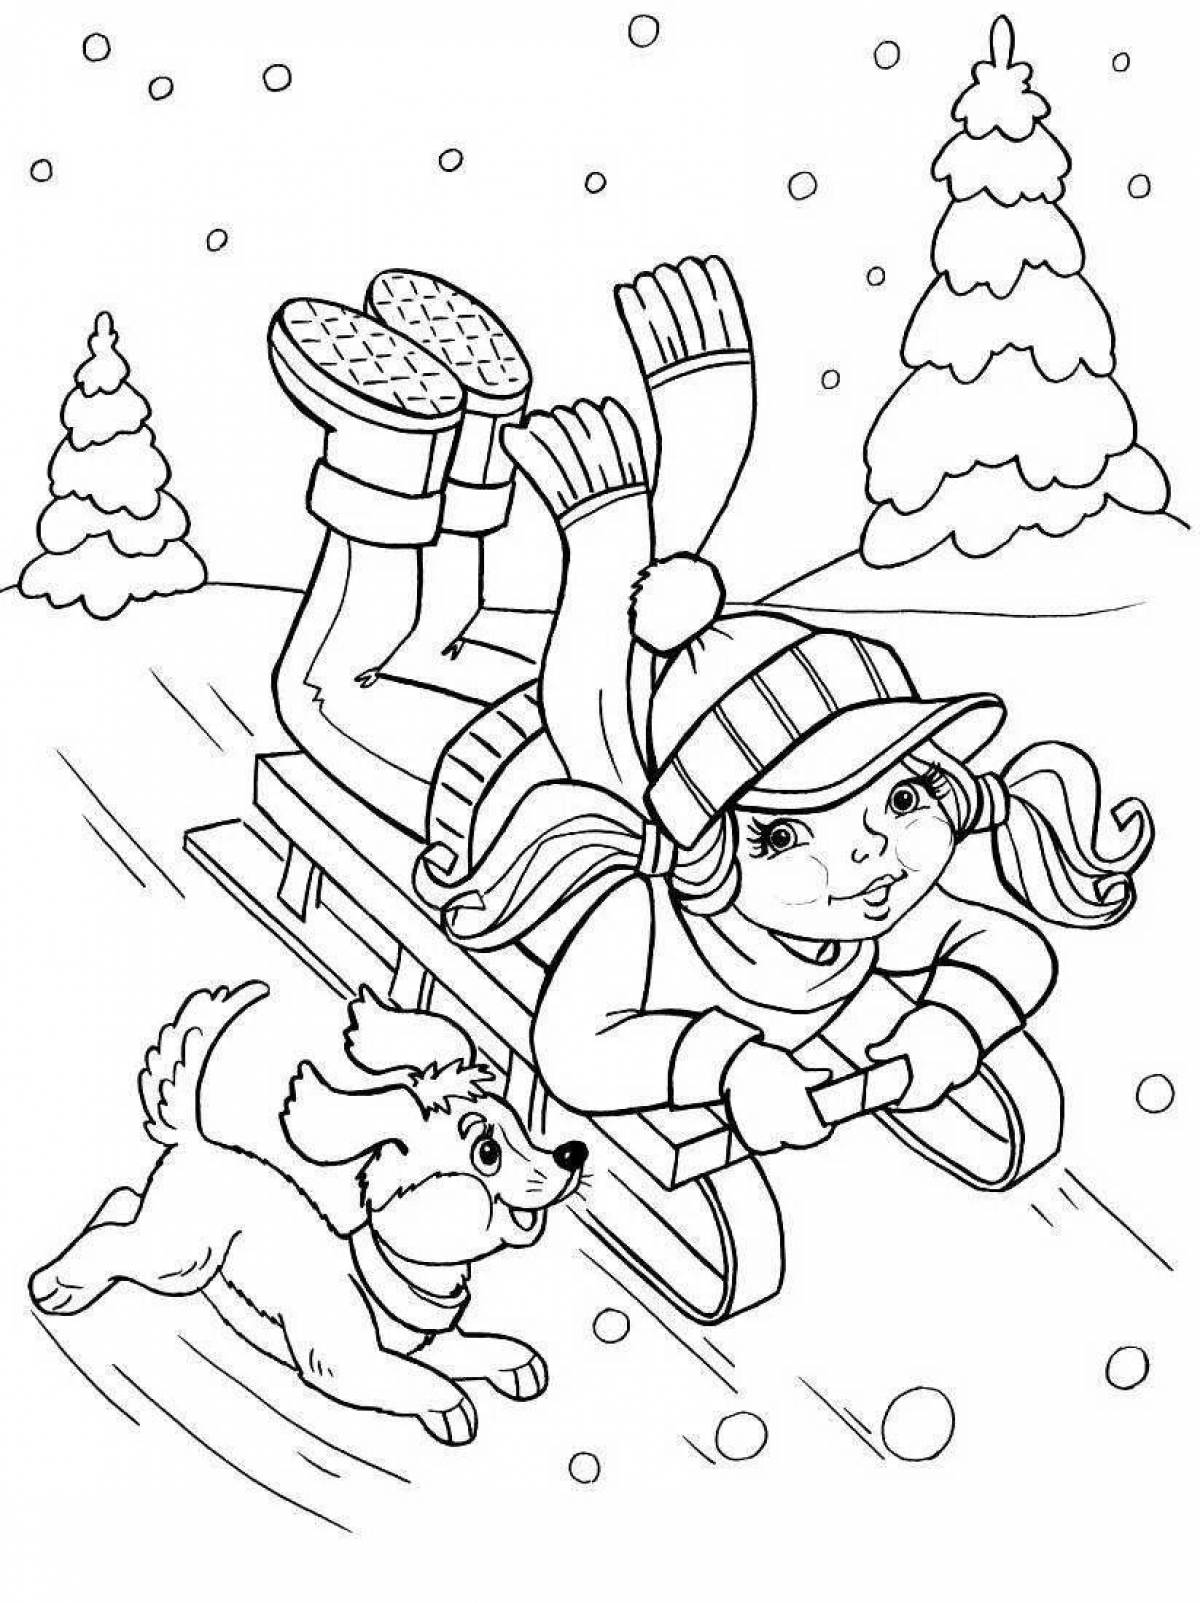 Fun winter activities for kids